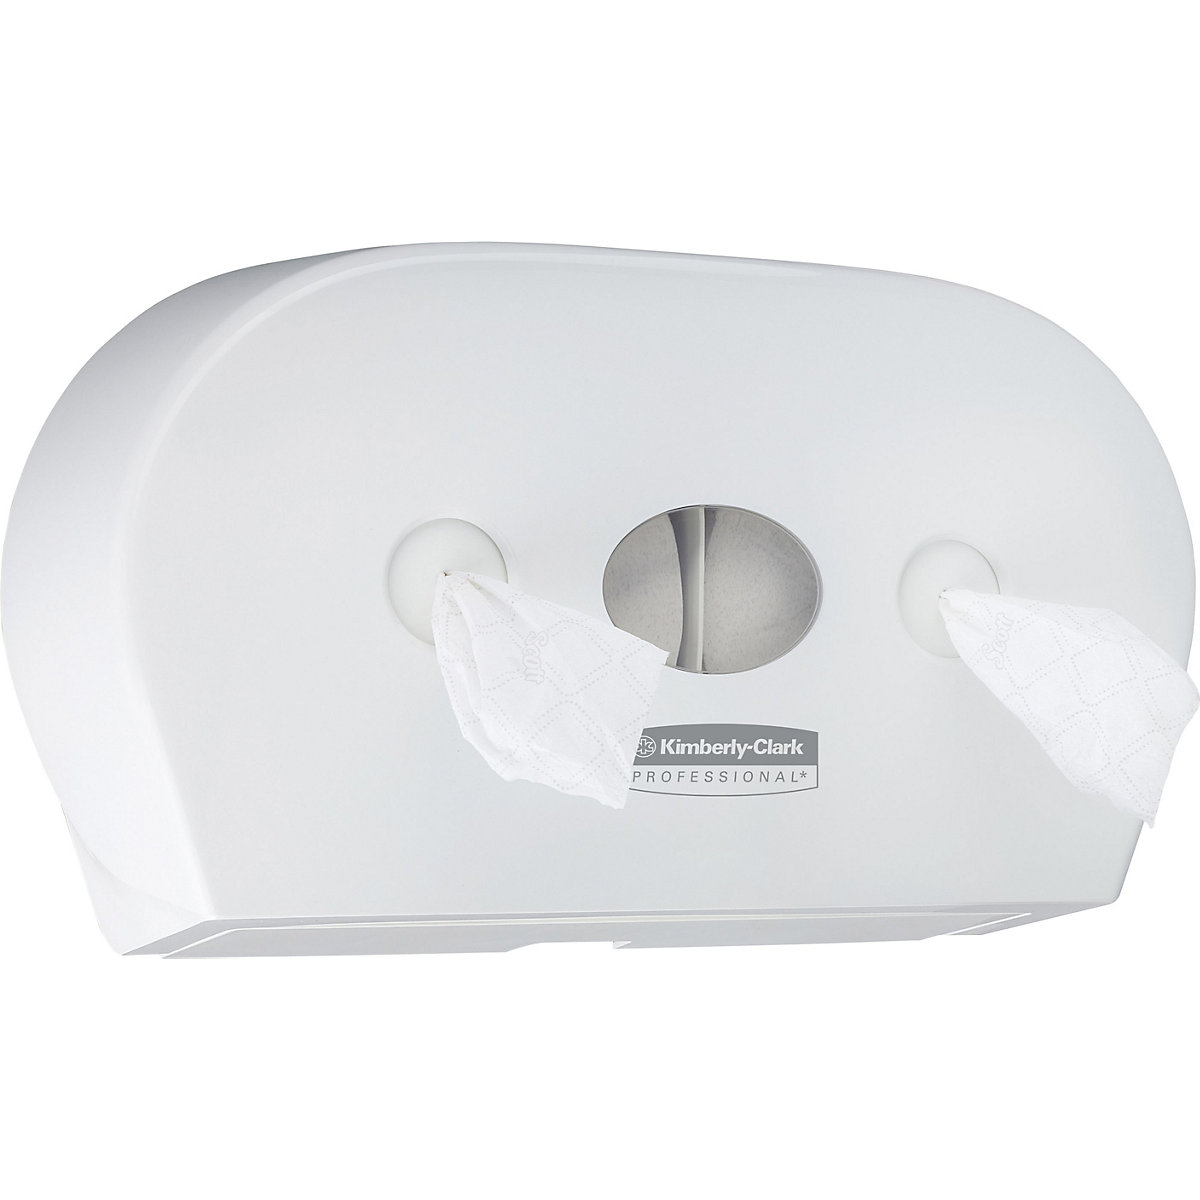 Scott® Control™ Mini WC-papír-adagoló, 7186 – Kimberly-Clark